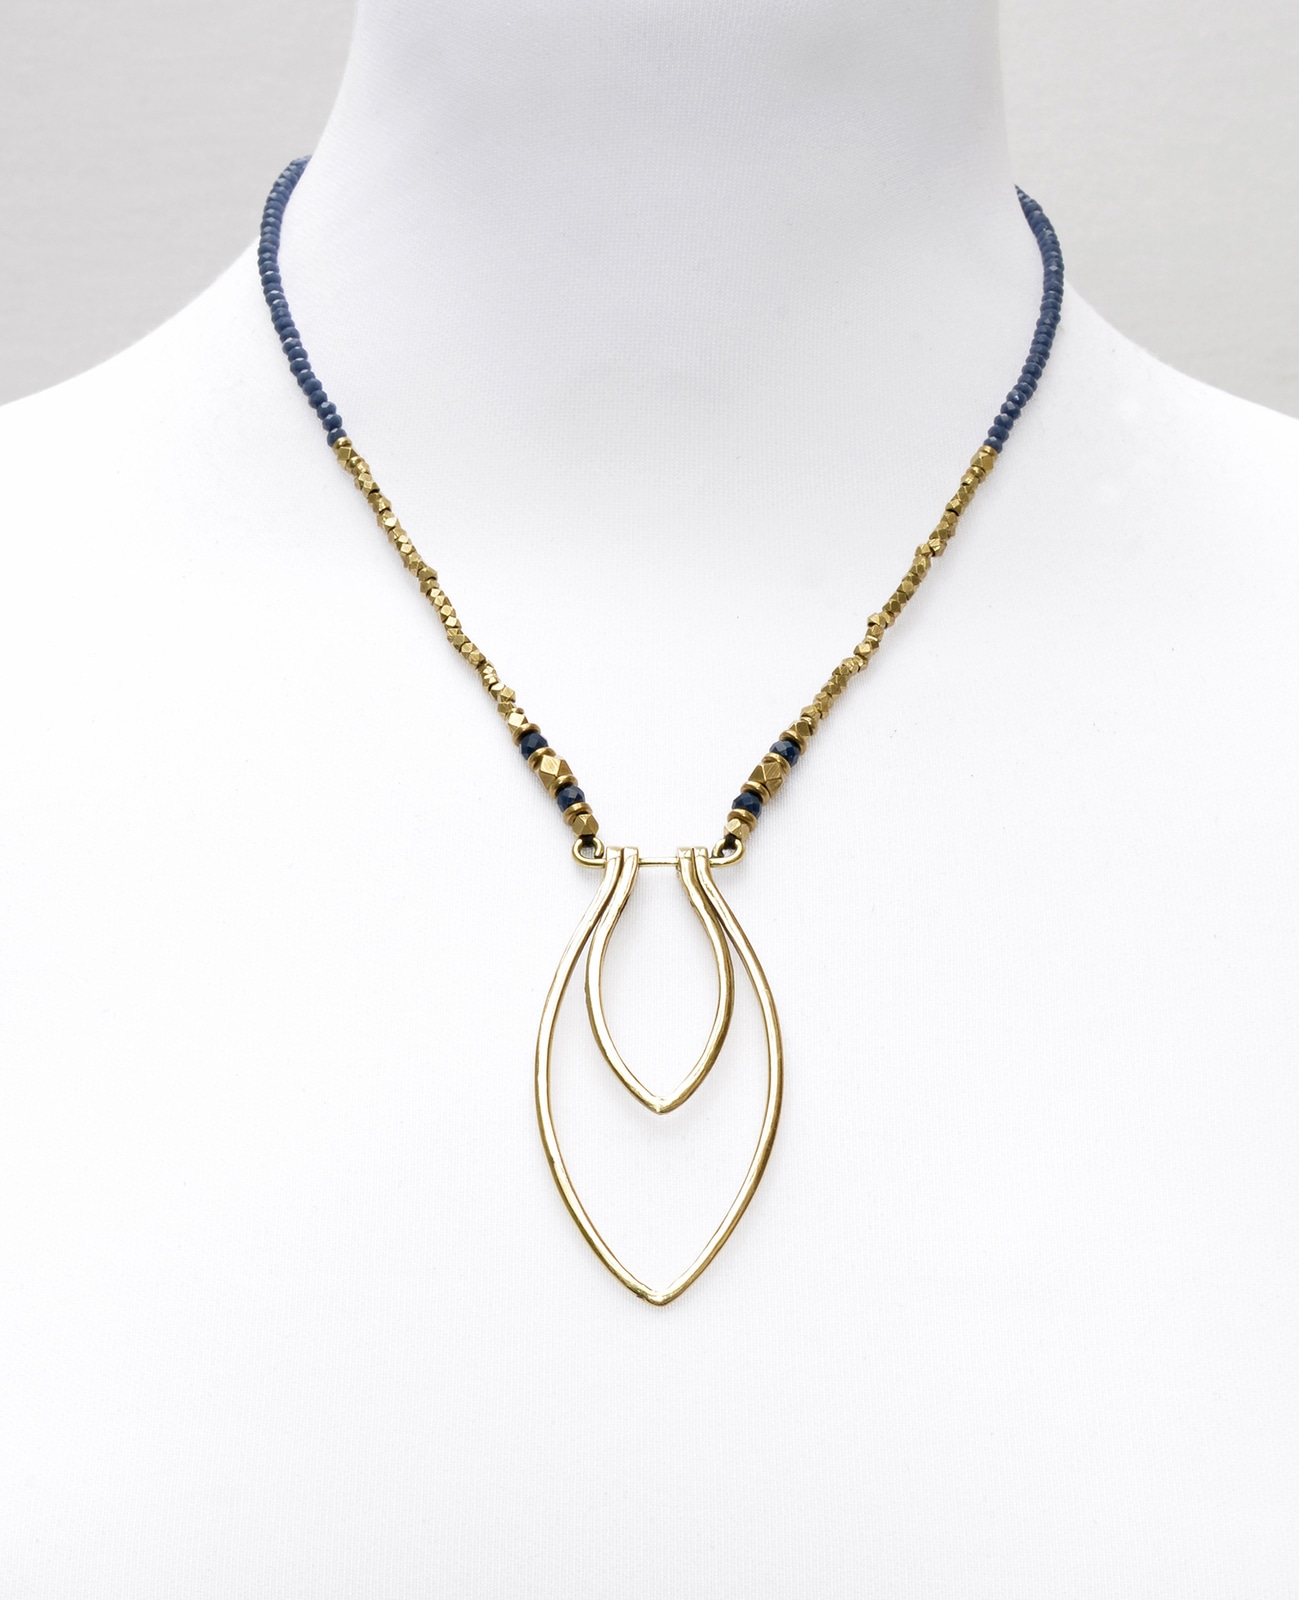 Collier en perles bleues avec pendentif oval allongé de la marque française Nataraj